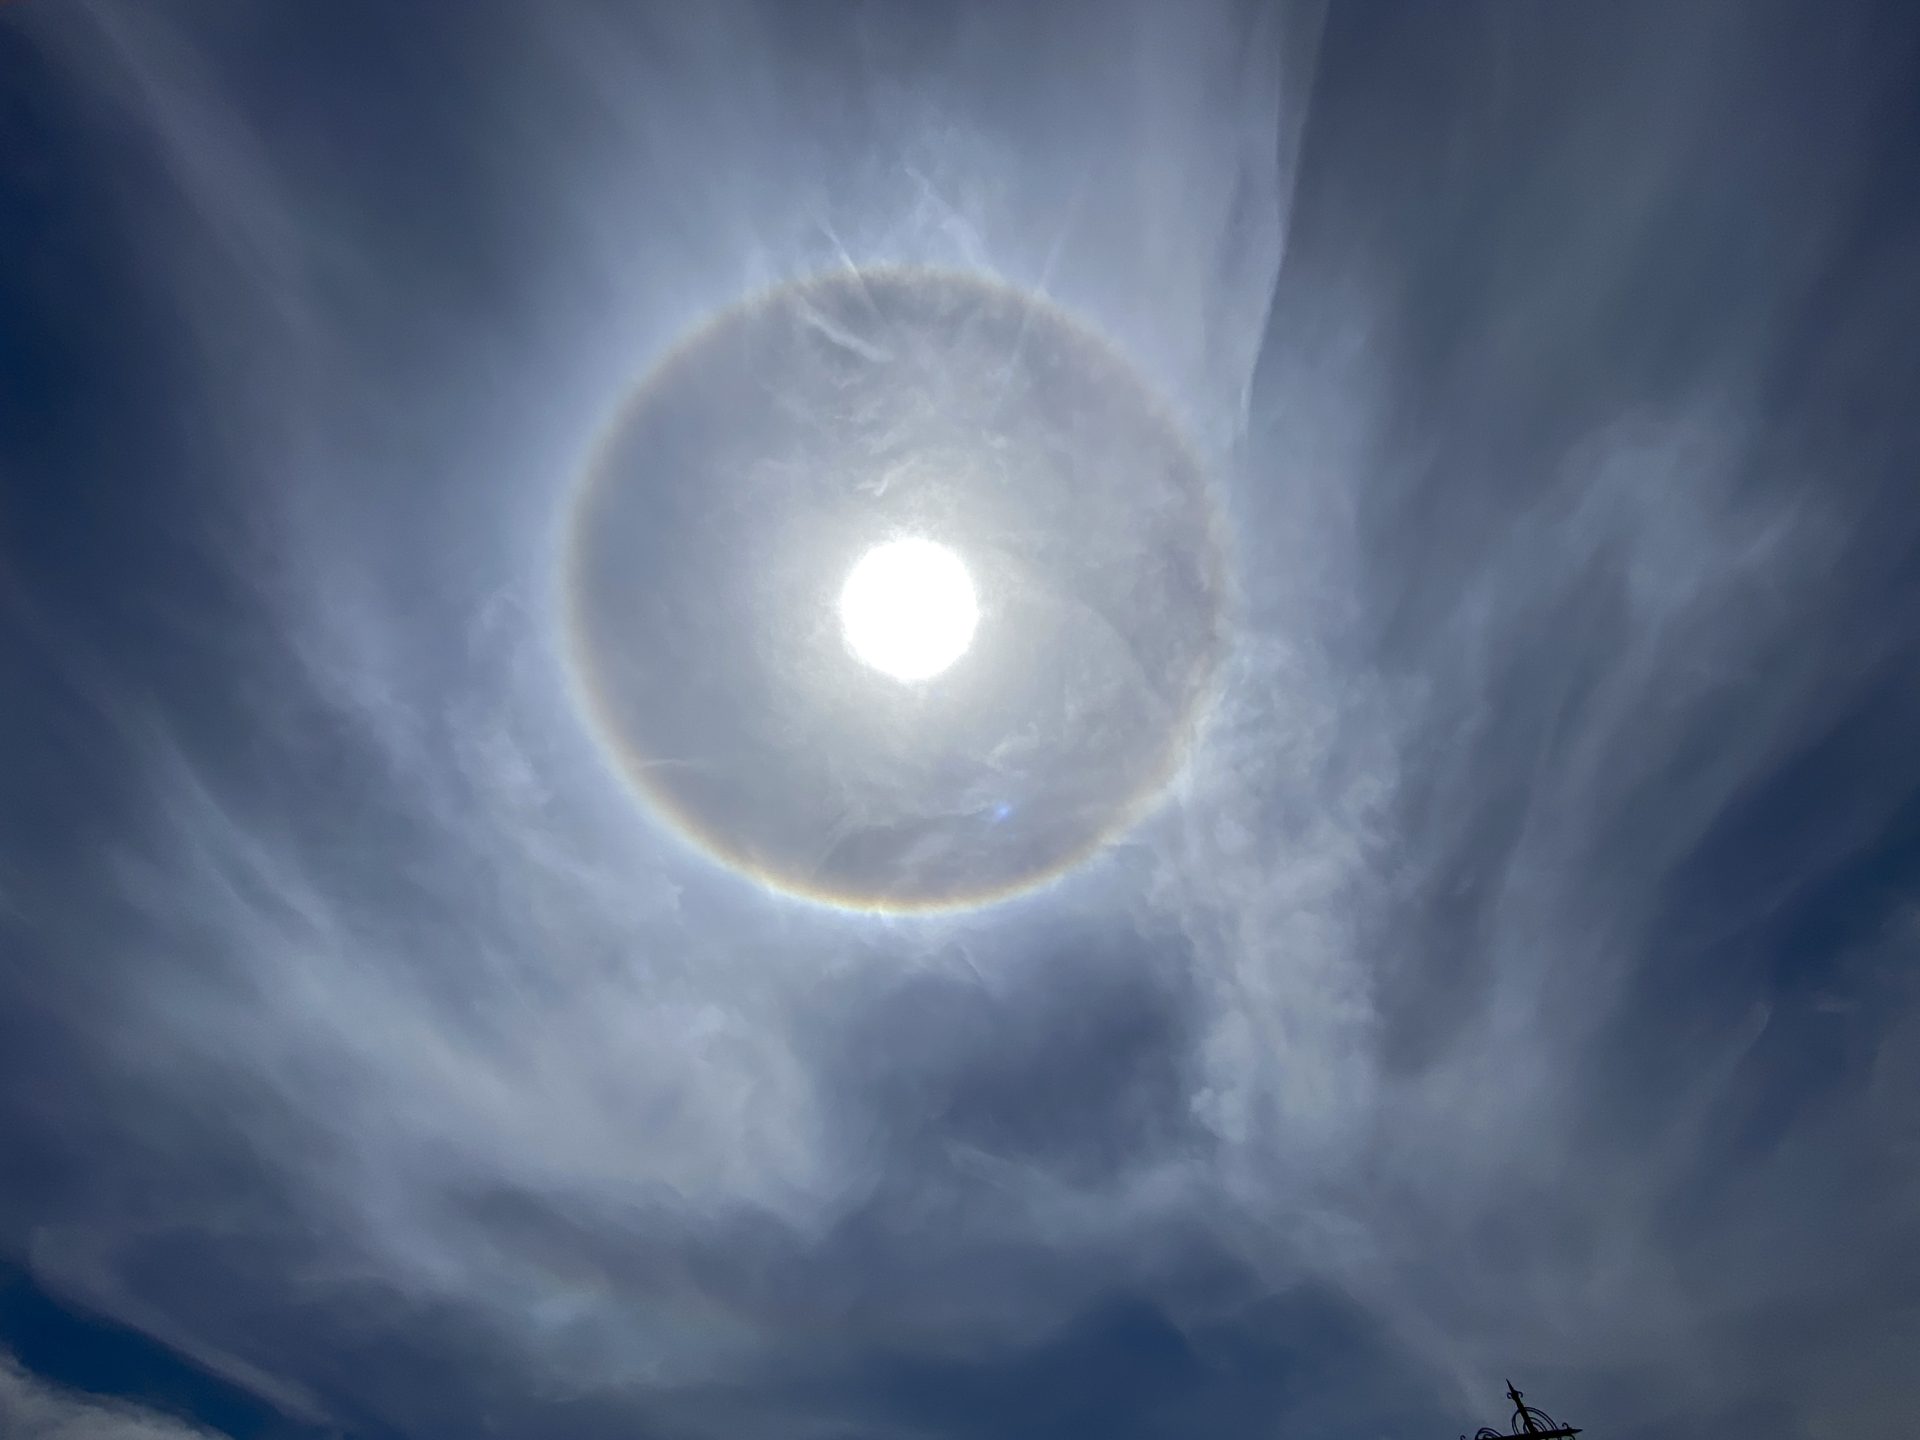 Detalle del halo solar producido por la luz del sol que atraviesa diminutos cristales de hielo que se encuentran suspendidos en la parte alta de la atmósfera.